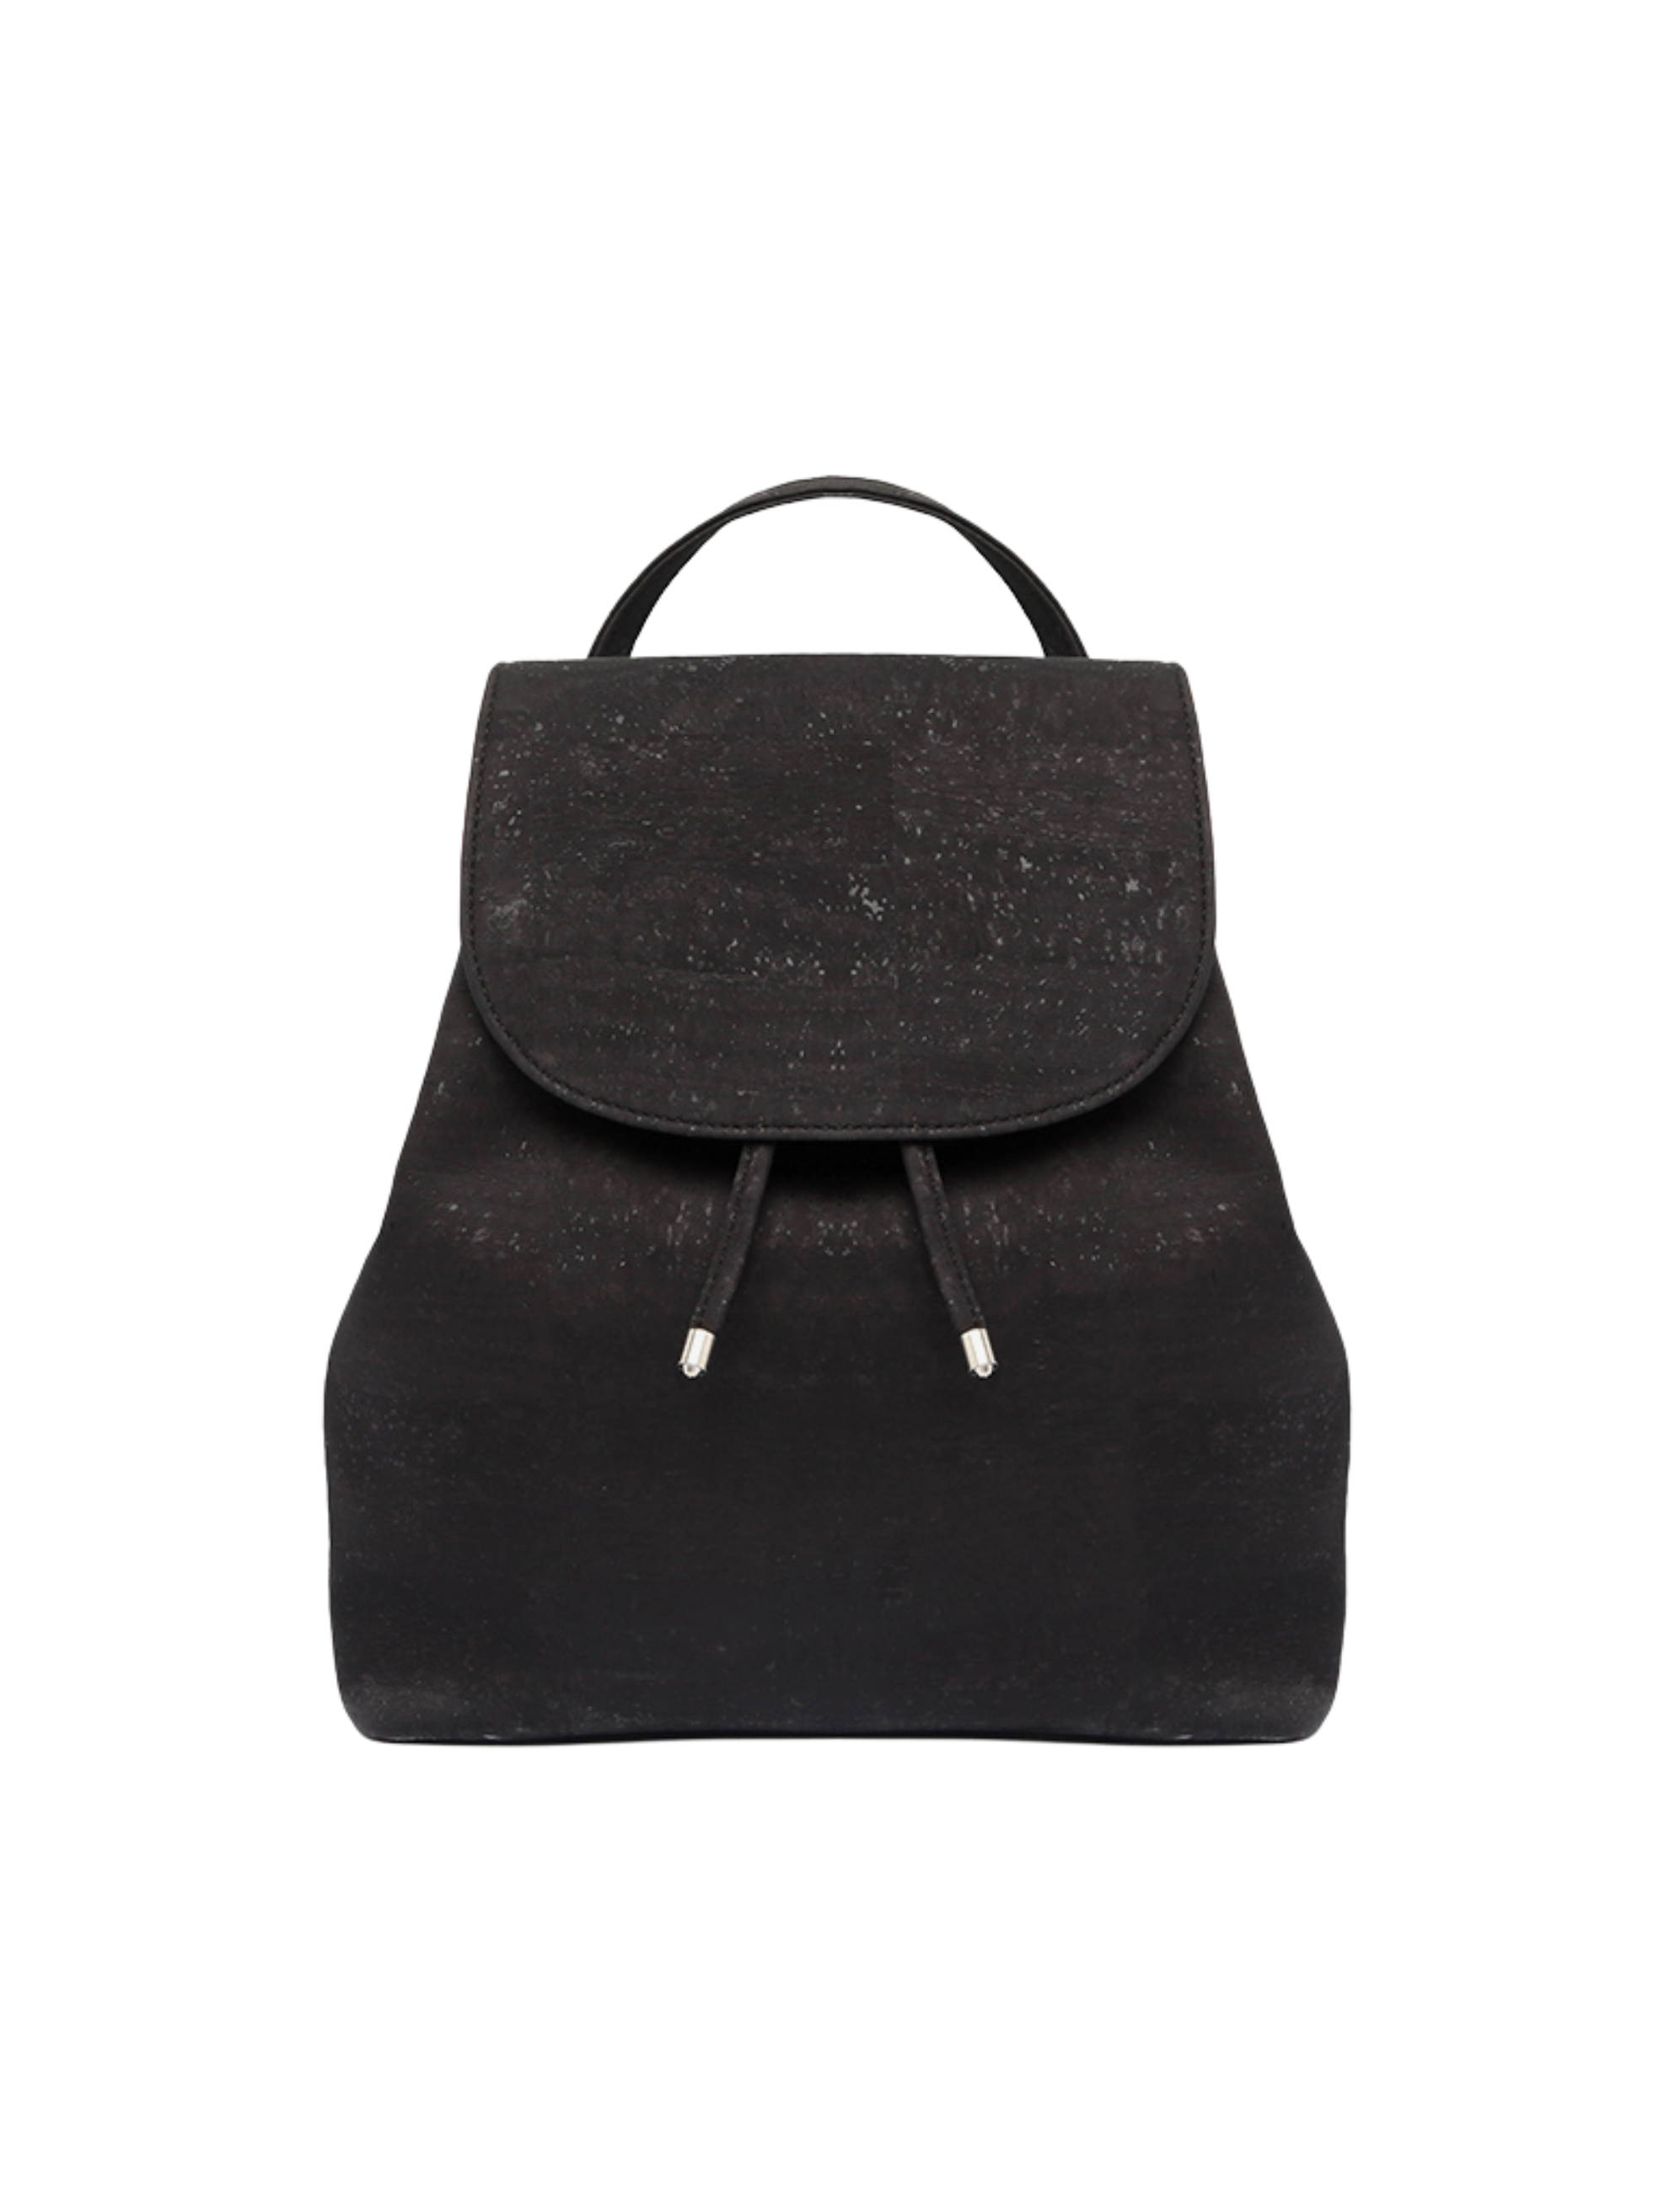 #color_ Black | Artelusa Cork Backpack - Black - 3017.04-B02-1